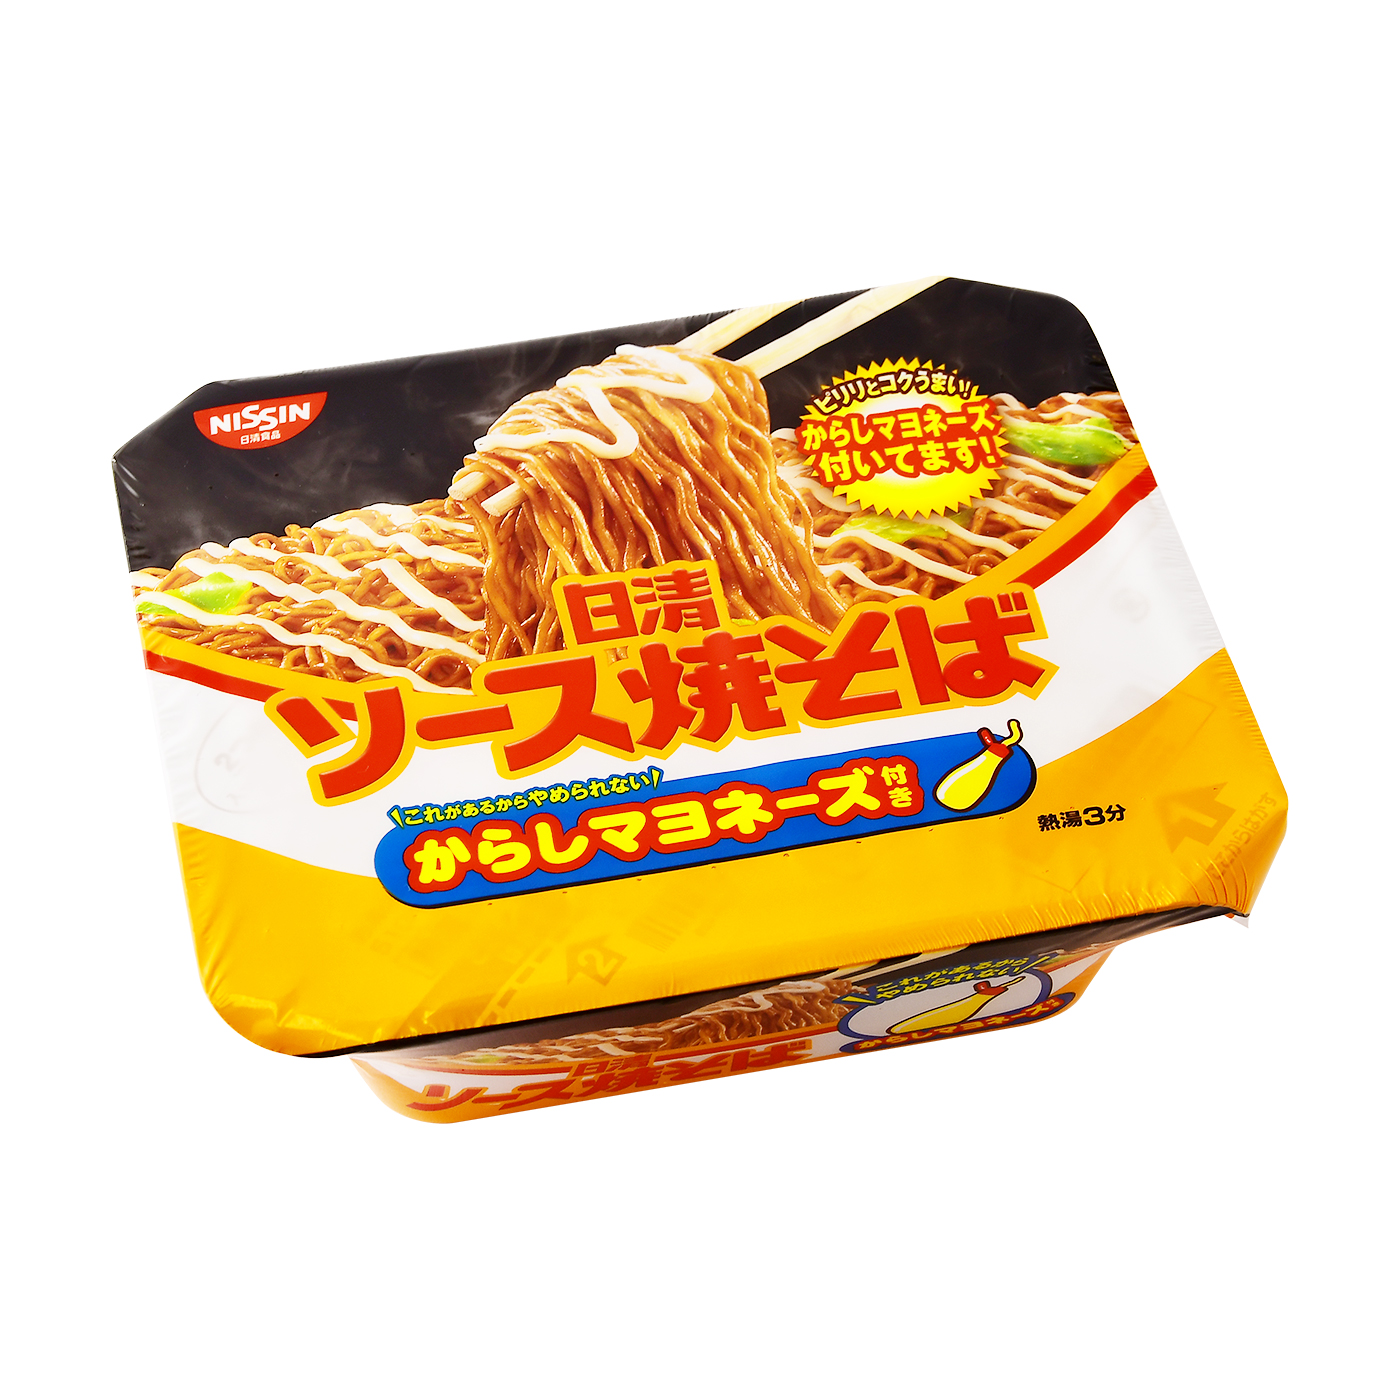 www.haoming.jp - 焼きそば カップ からし マヨネーズ カップ麺 インスタント食品 詰め合わせ 価格比較